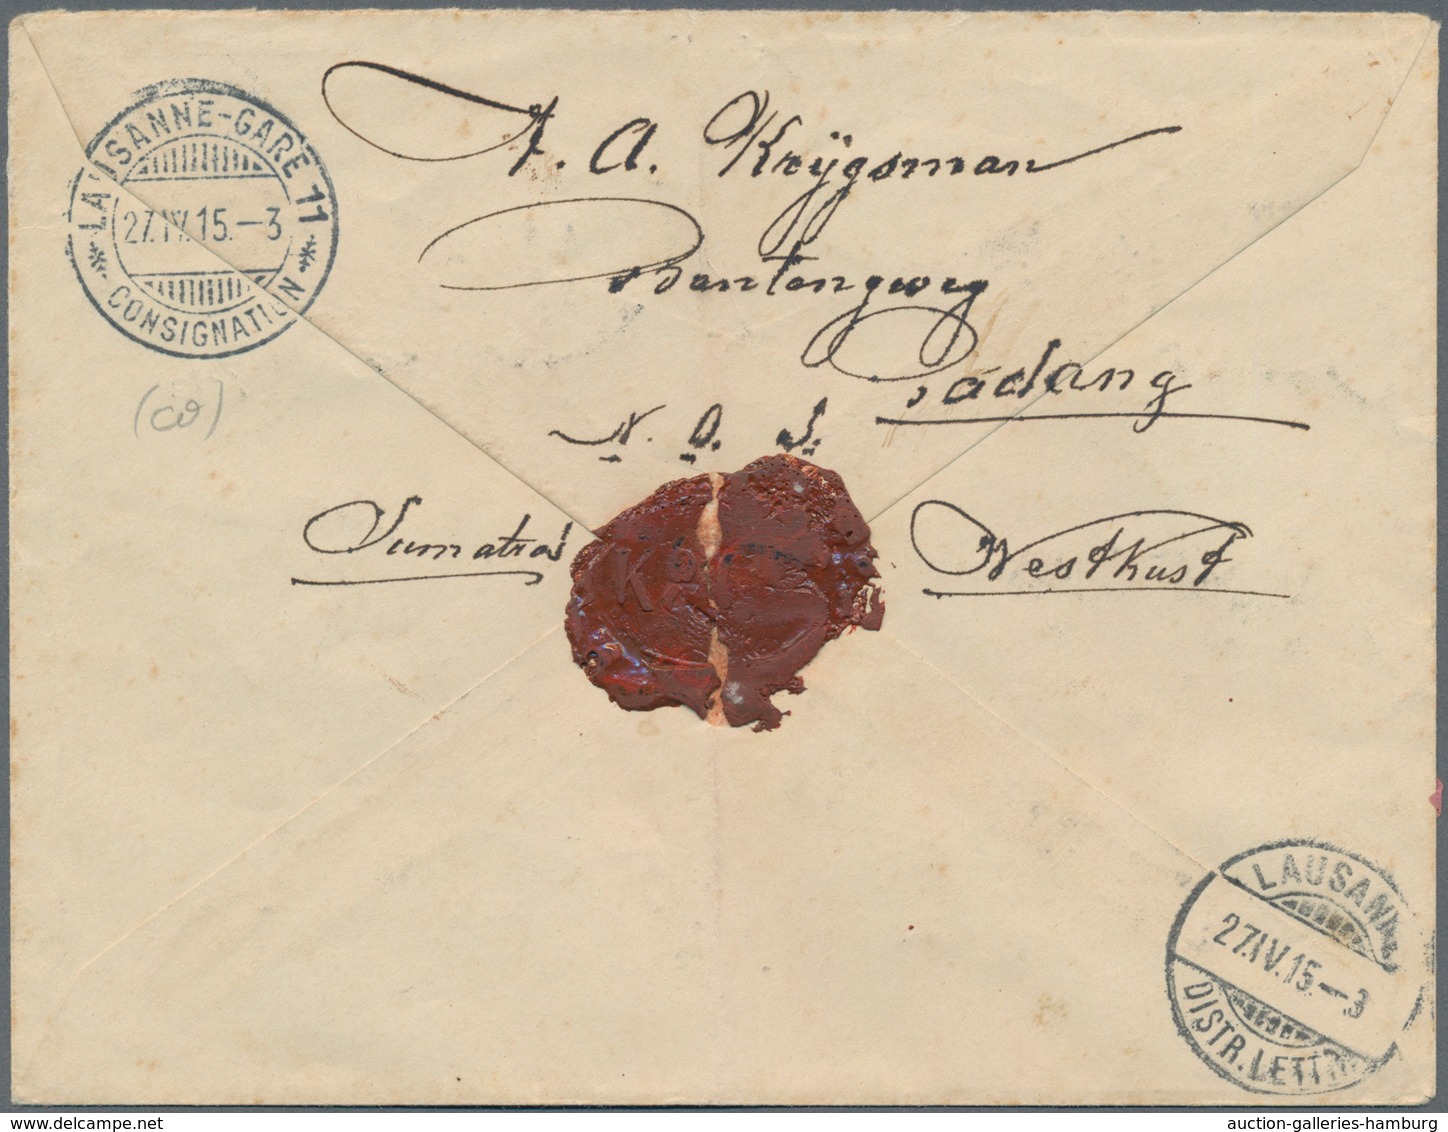 Niederländisch-Indien: 1908 Postal Stationery Envelope 17½ On 25c. Violet Used Registered With A.R. - Netherlands Indies